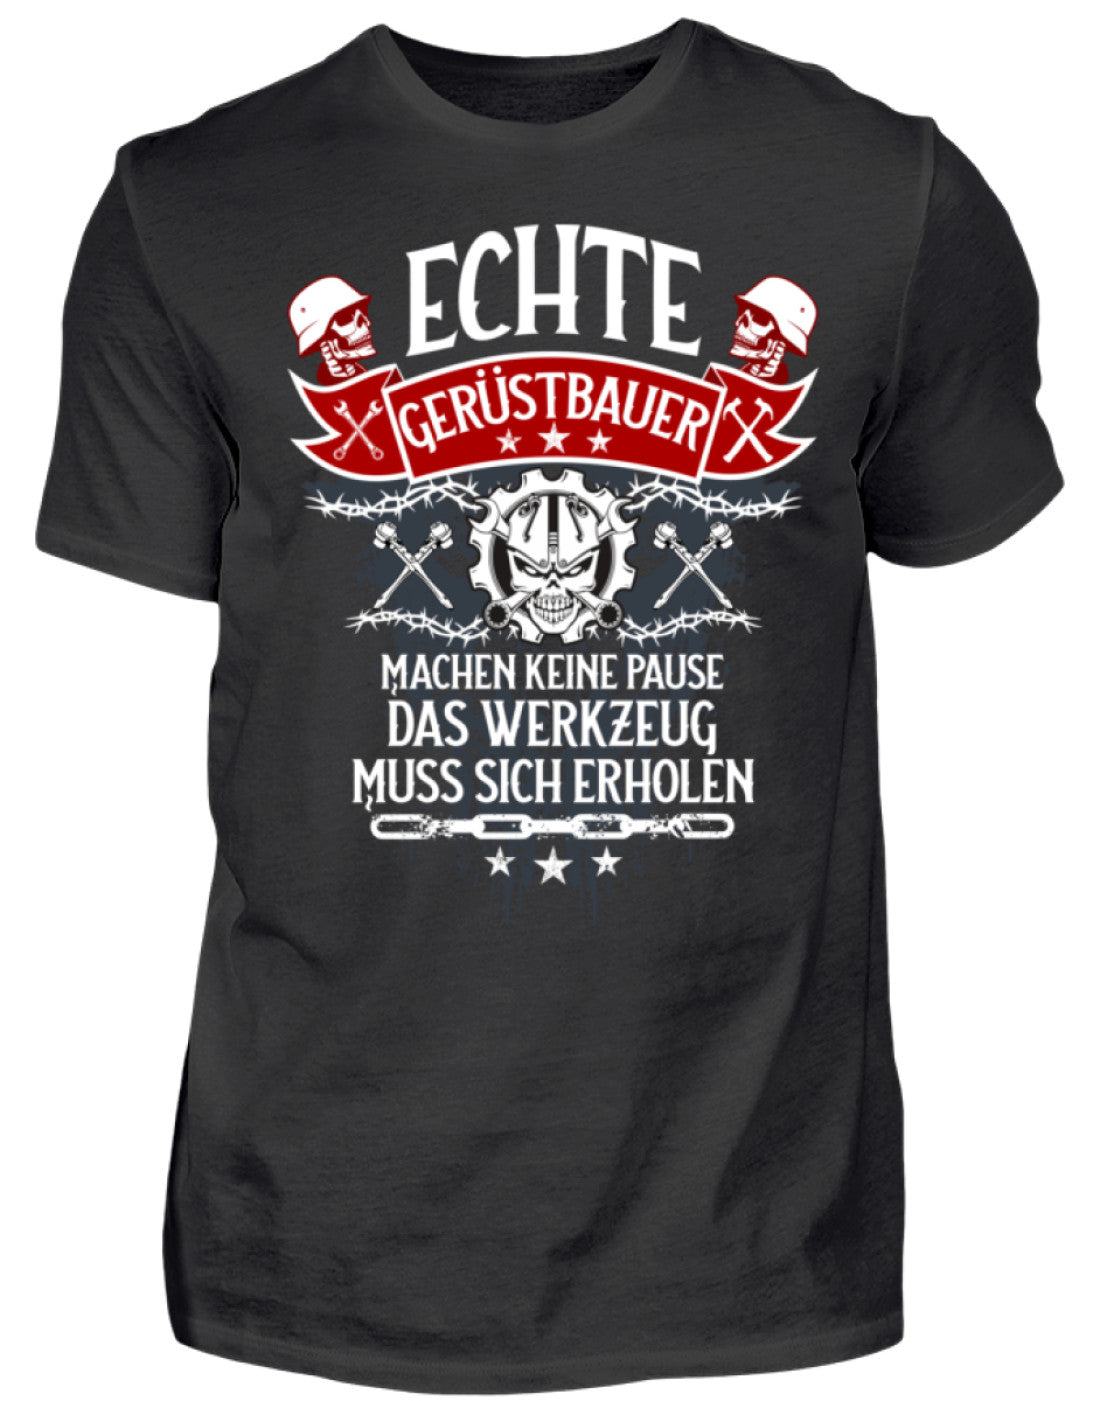 Gerüstbauer T-Shirt Echte Gerüstbauer €21.95 Gerüstbauer - Shop >>